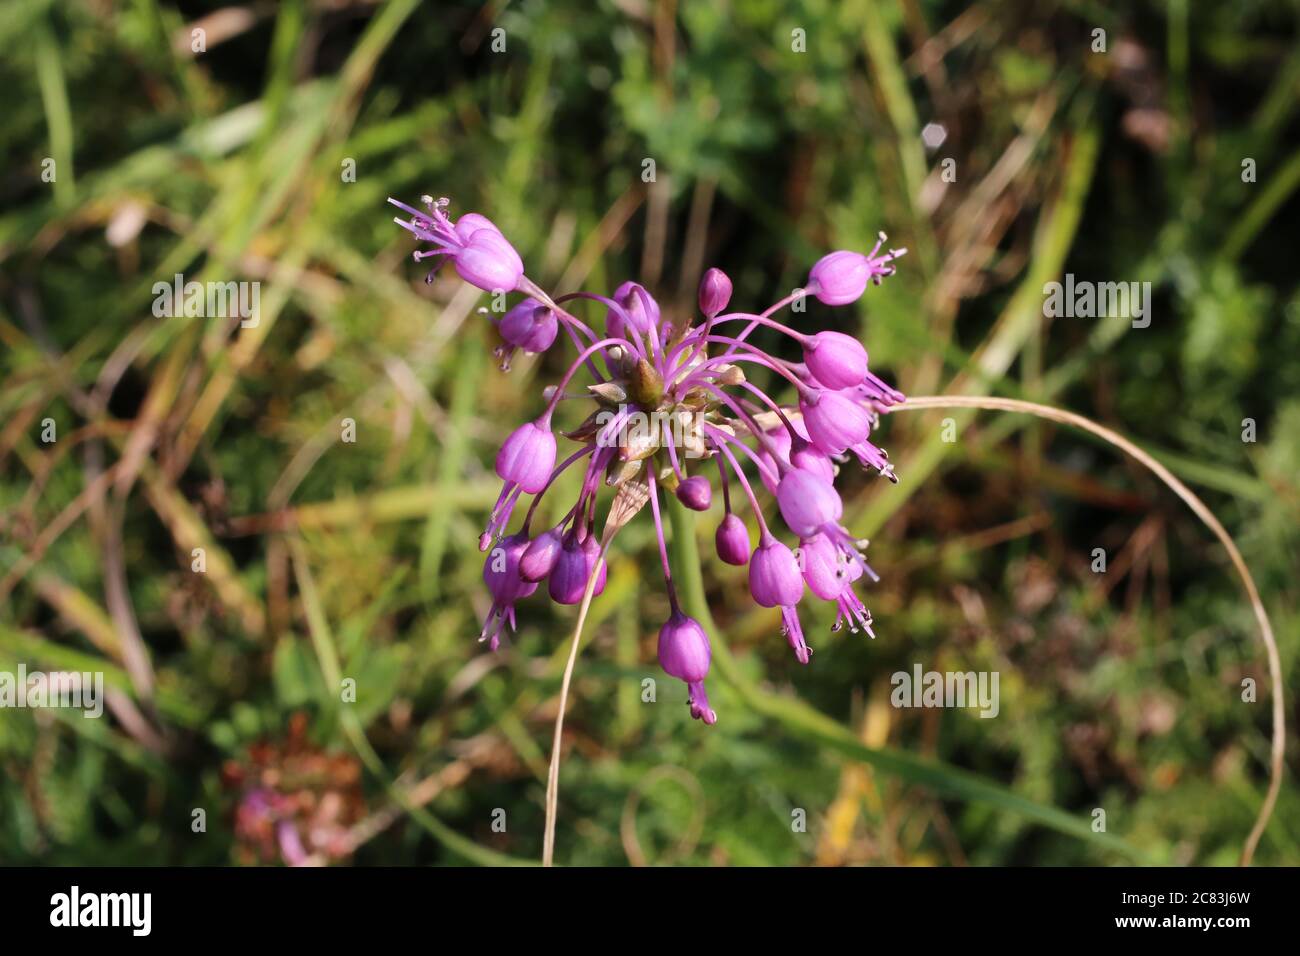 Allium carinatum subsp. carinatum, Keeled Garlic. Wild plant shot in summer. Stock Photo